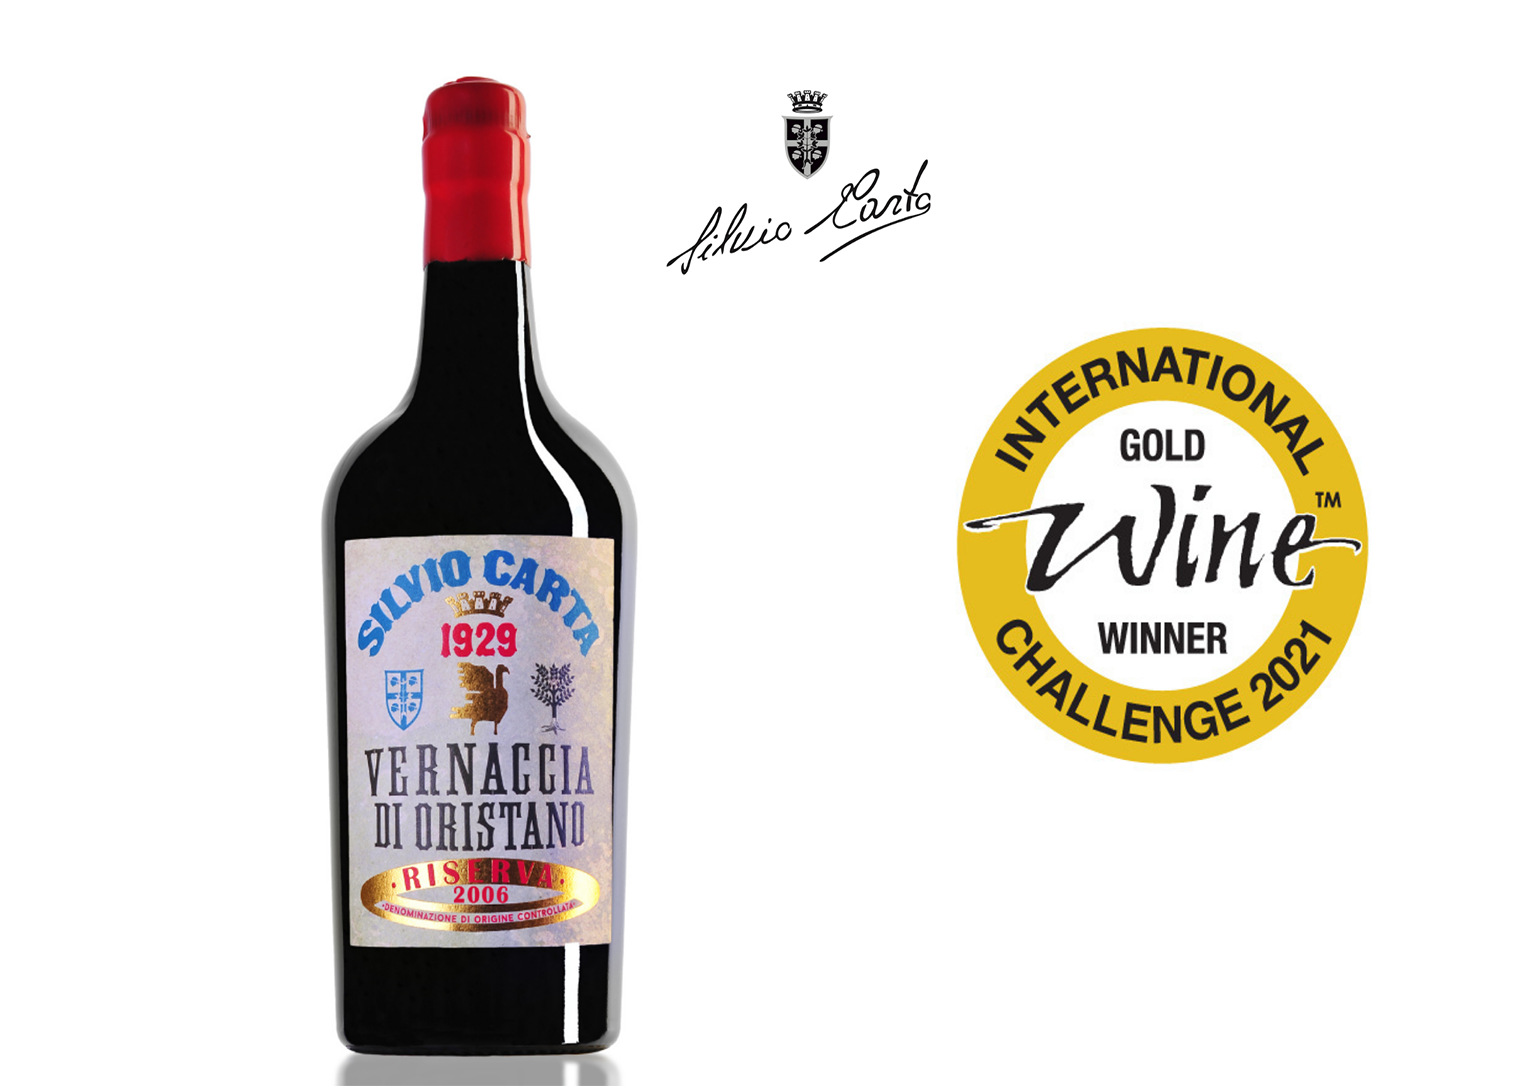 La Vernaccia di Oristano DOC Riserva 2006 regala alla Sardegna l’unico oro dell’IWC – International Wine Challenge di Londra